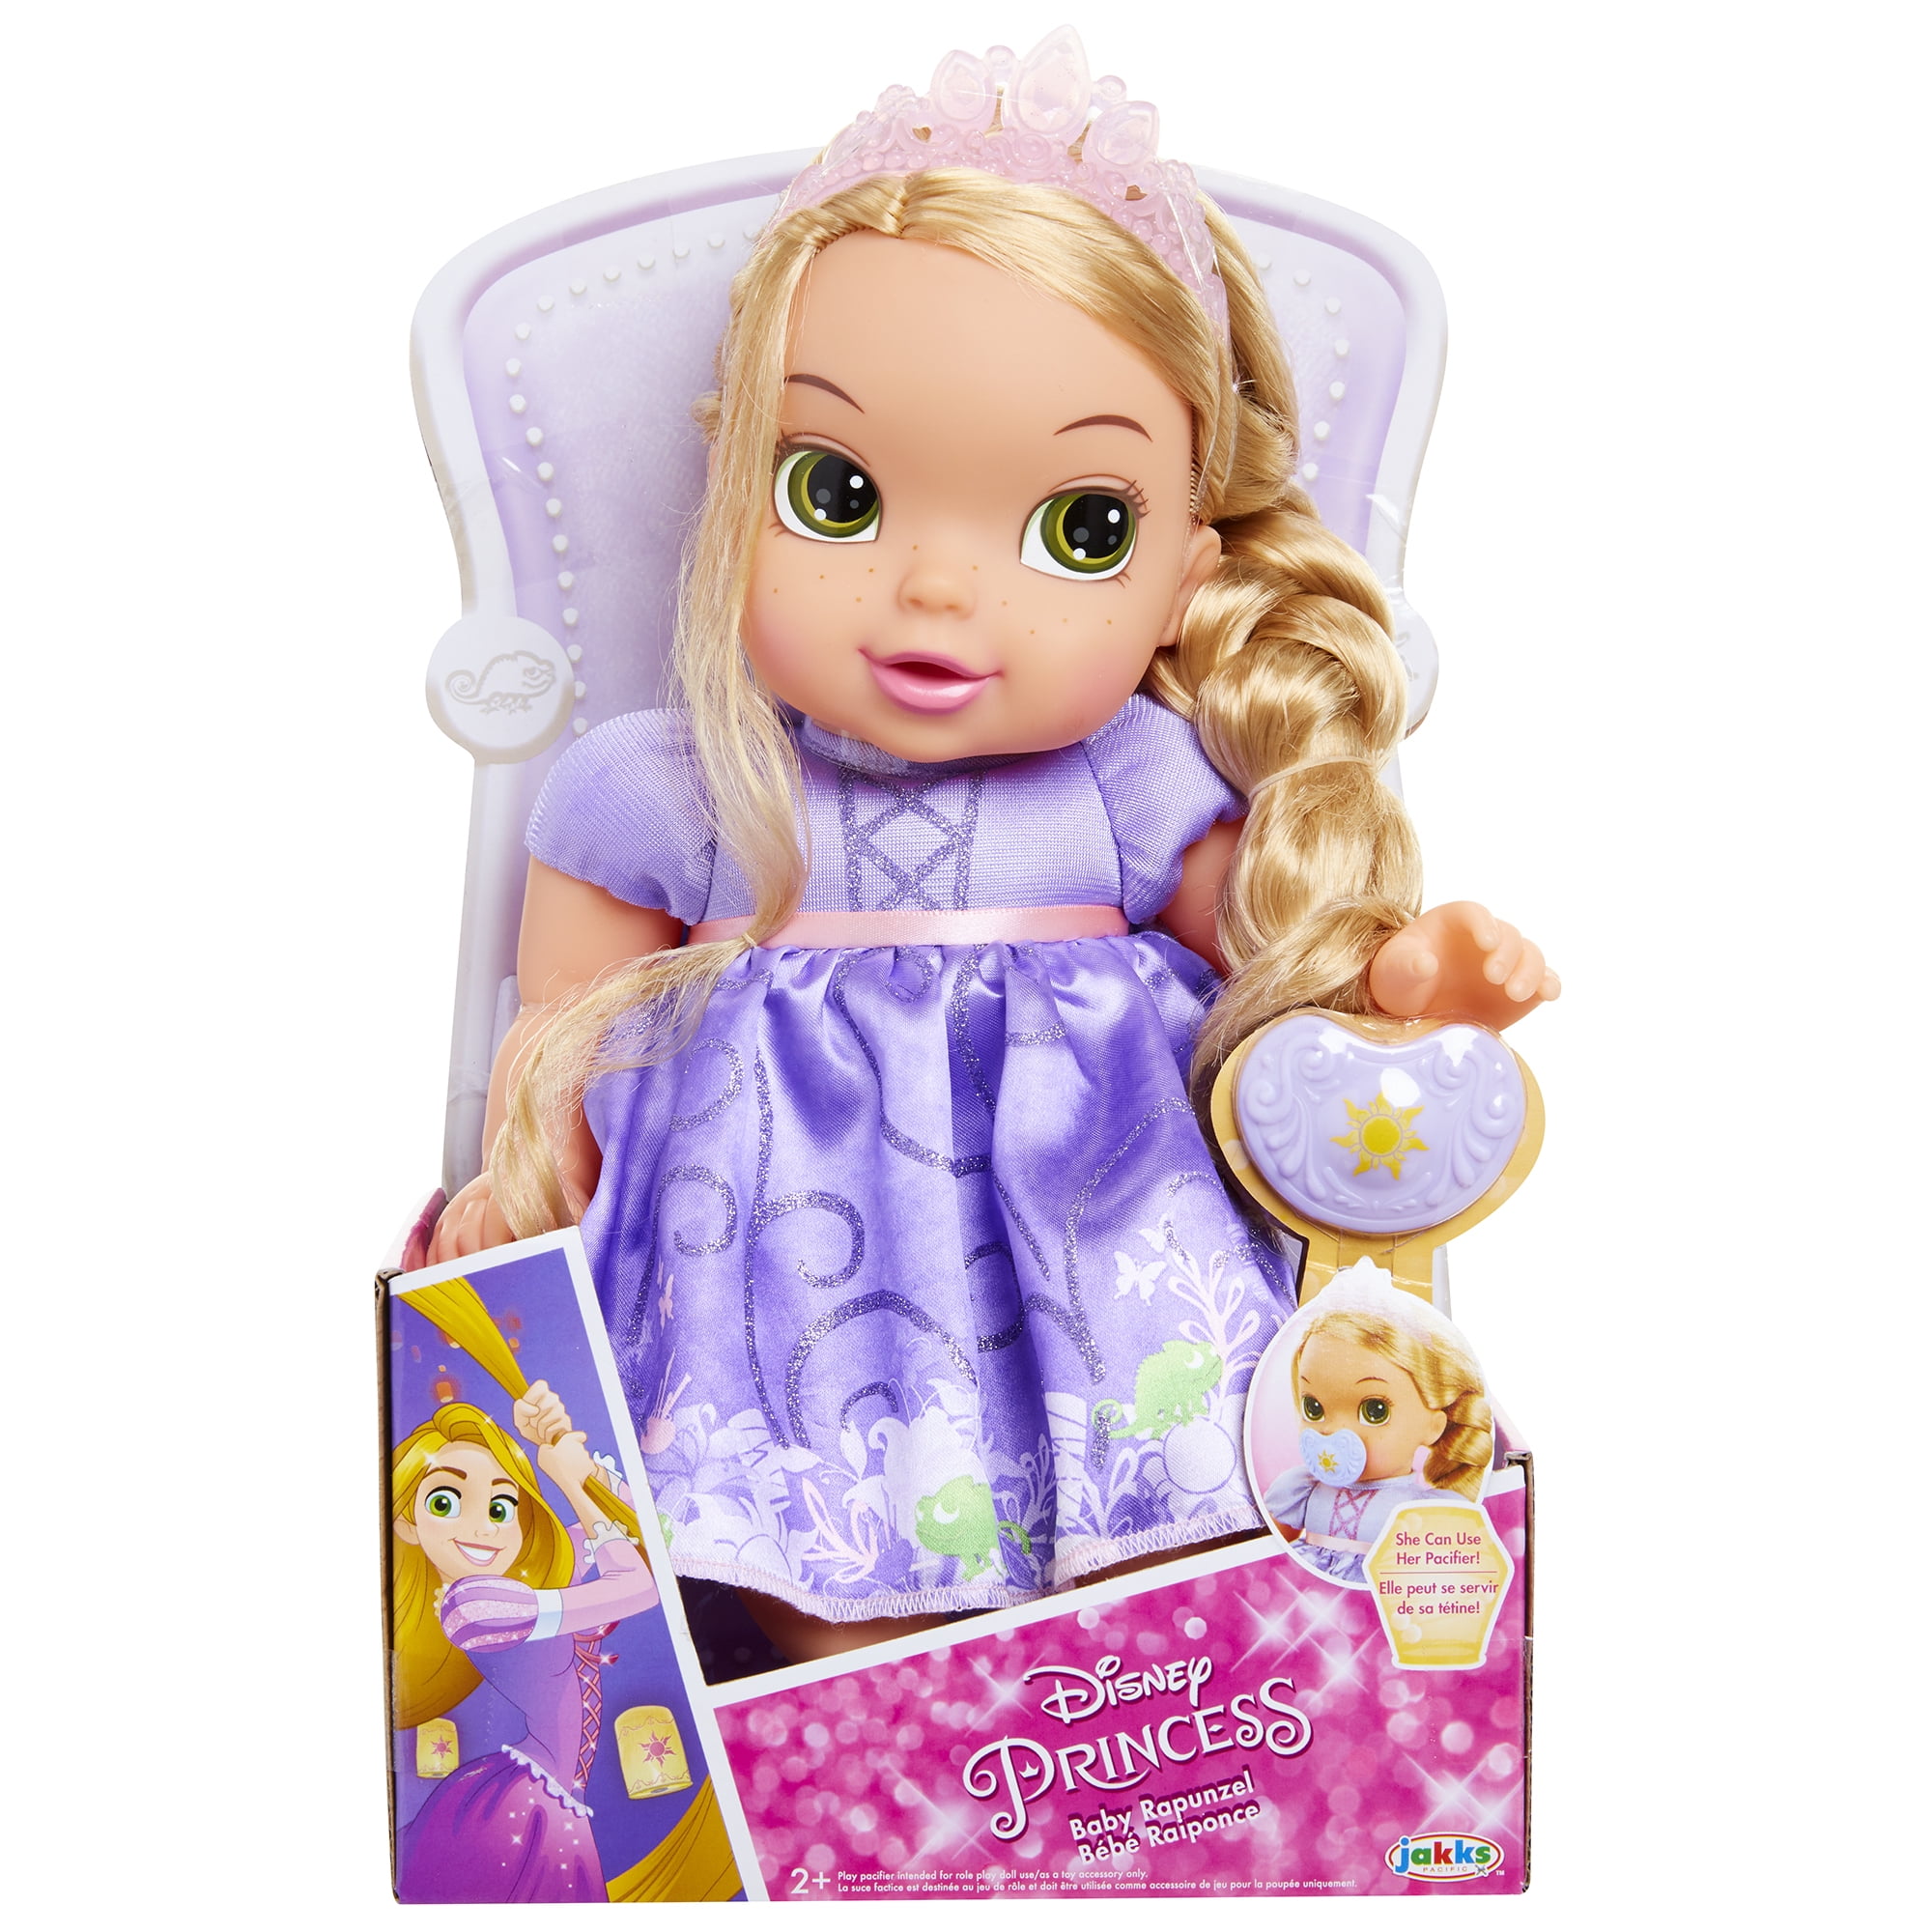 Принцесса малышка s класса. Рапунцель Делюкс кукла. Бейби Рапунцель. Кукла Рапунцель малышка. Кукла Рапунцель поющая Disney Princess c1752.